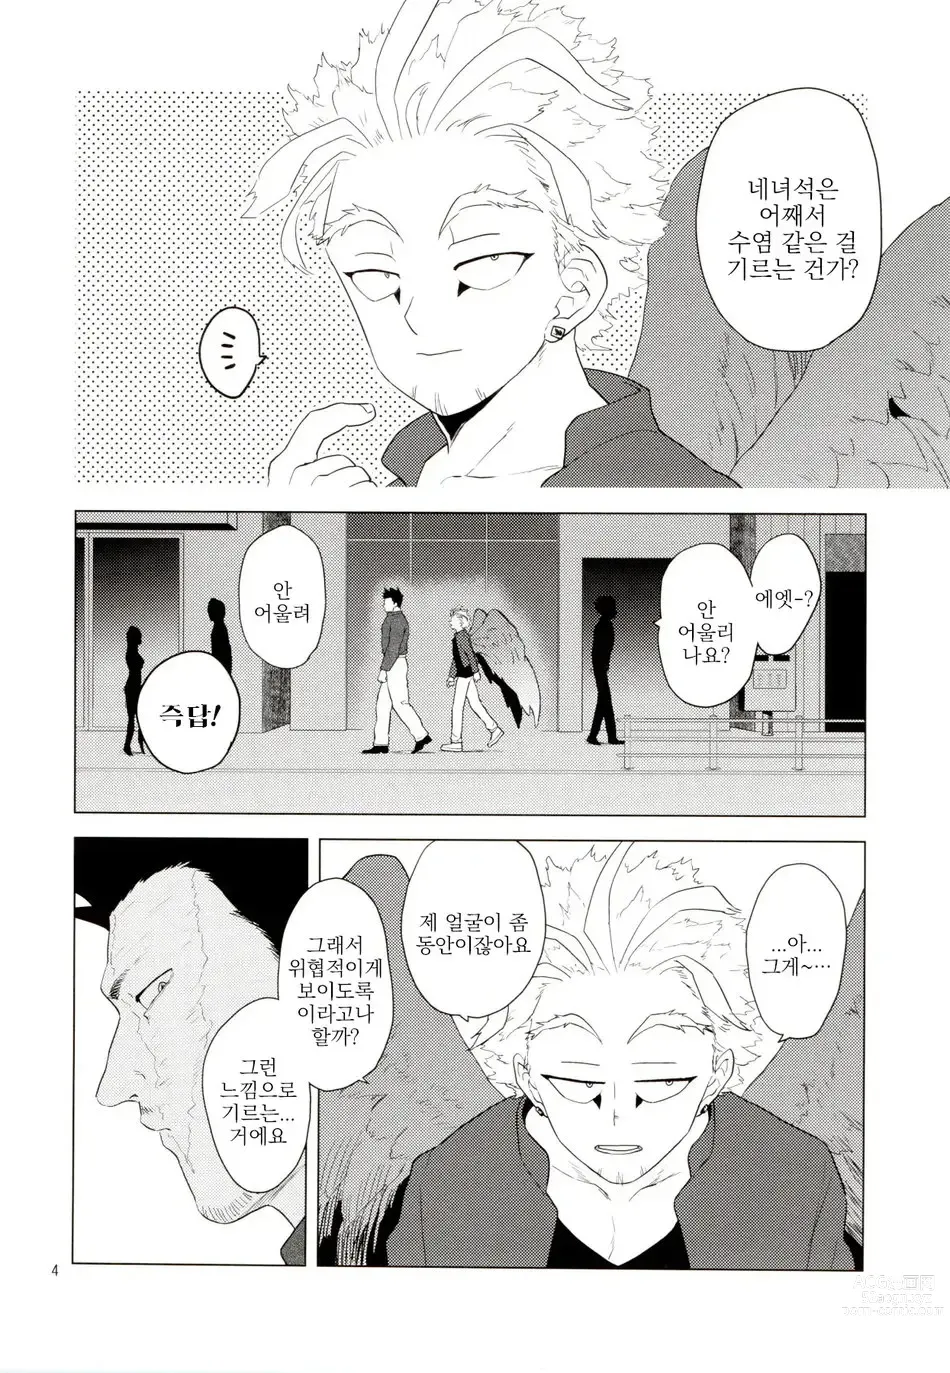 Page 3 of doujinshi Enholog #01